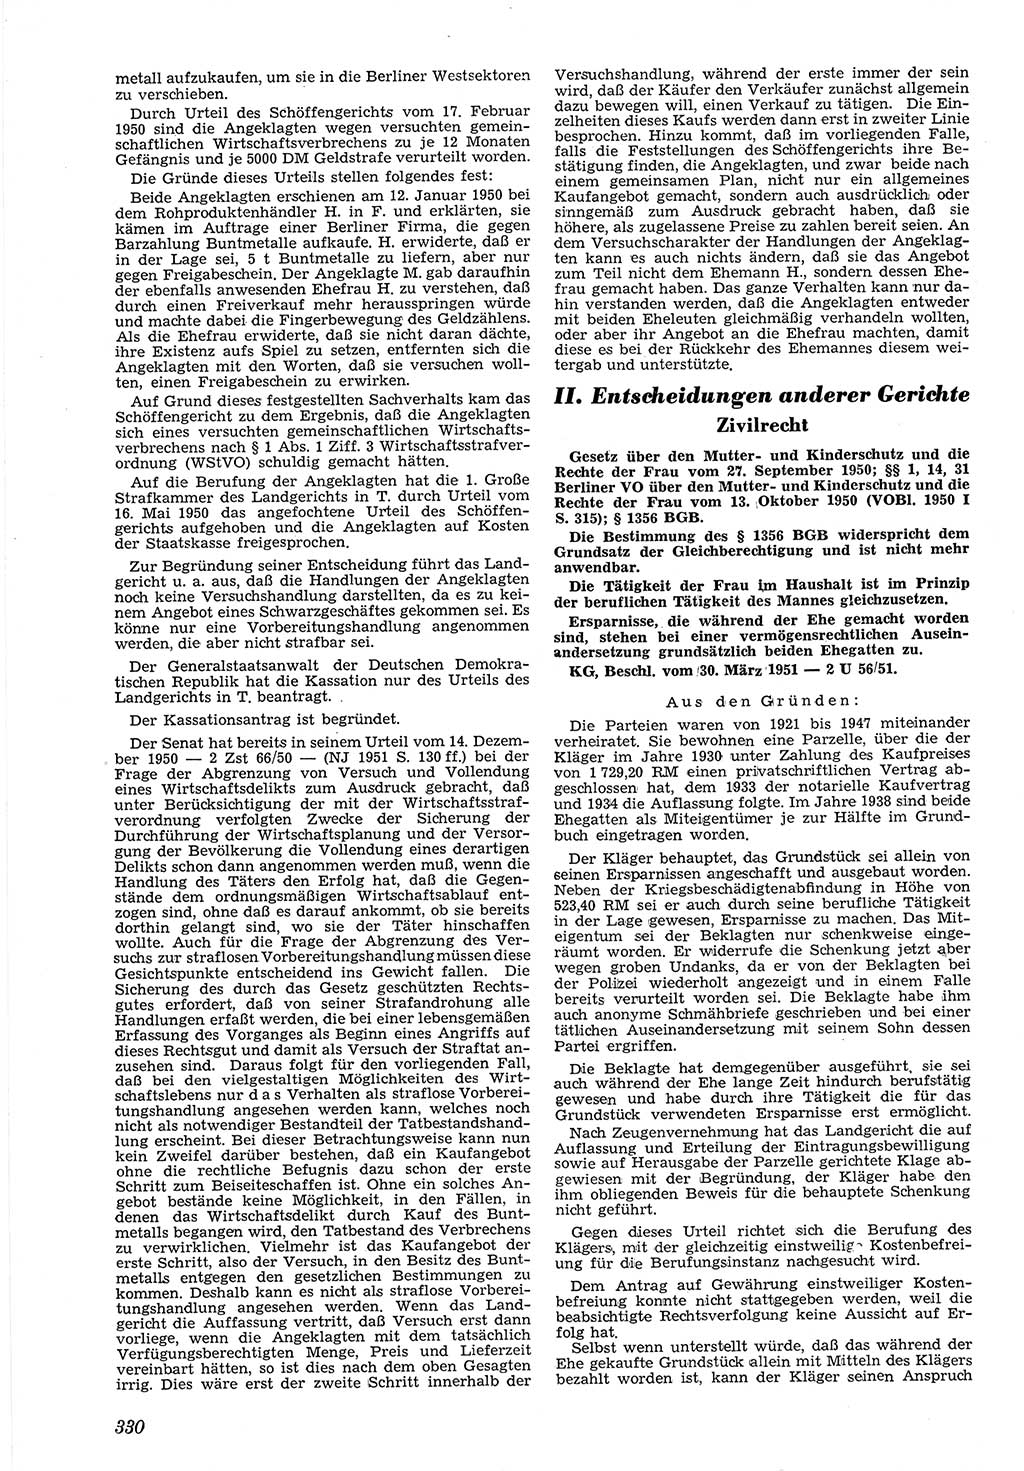 Neue Justiz (NJ), Zeitschrift für Recht und Rechtswissenschaft [Deutsche Demokratische Republik (DDR)], 5. Jahrgang 1951, Seite 330 (NJ DDR 1951, S. 330)